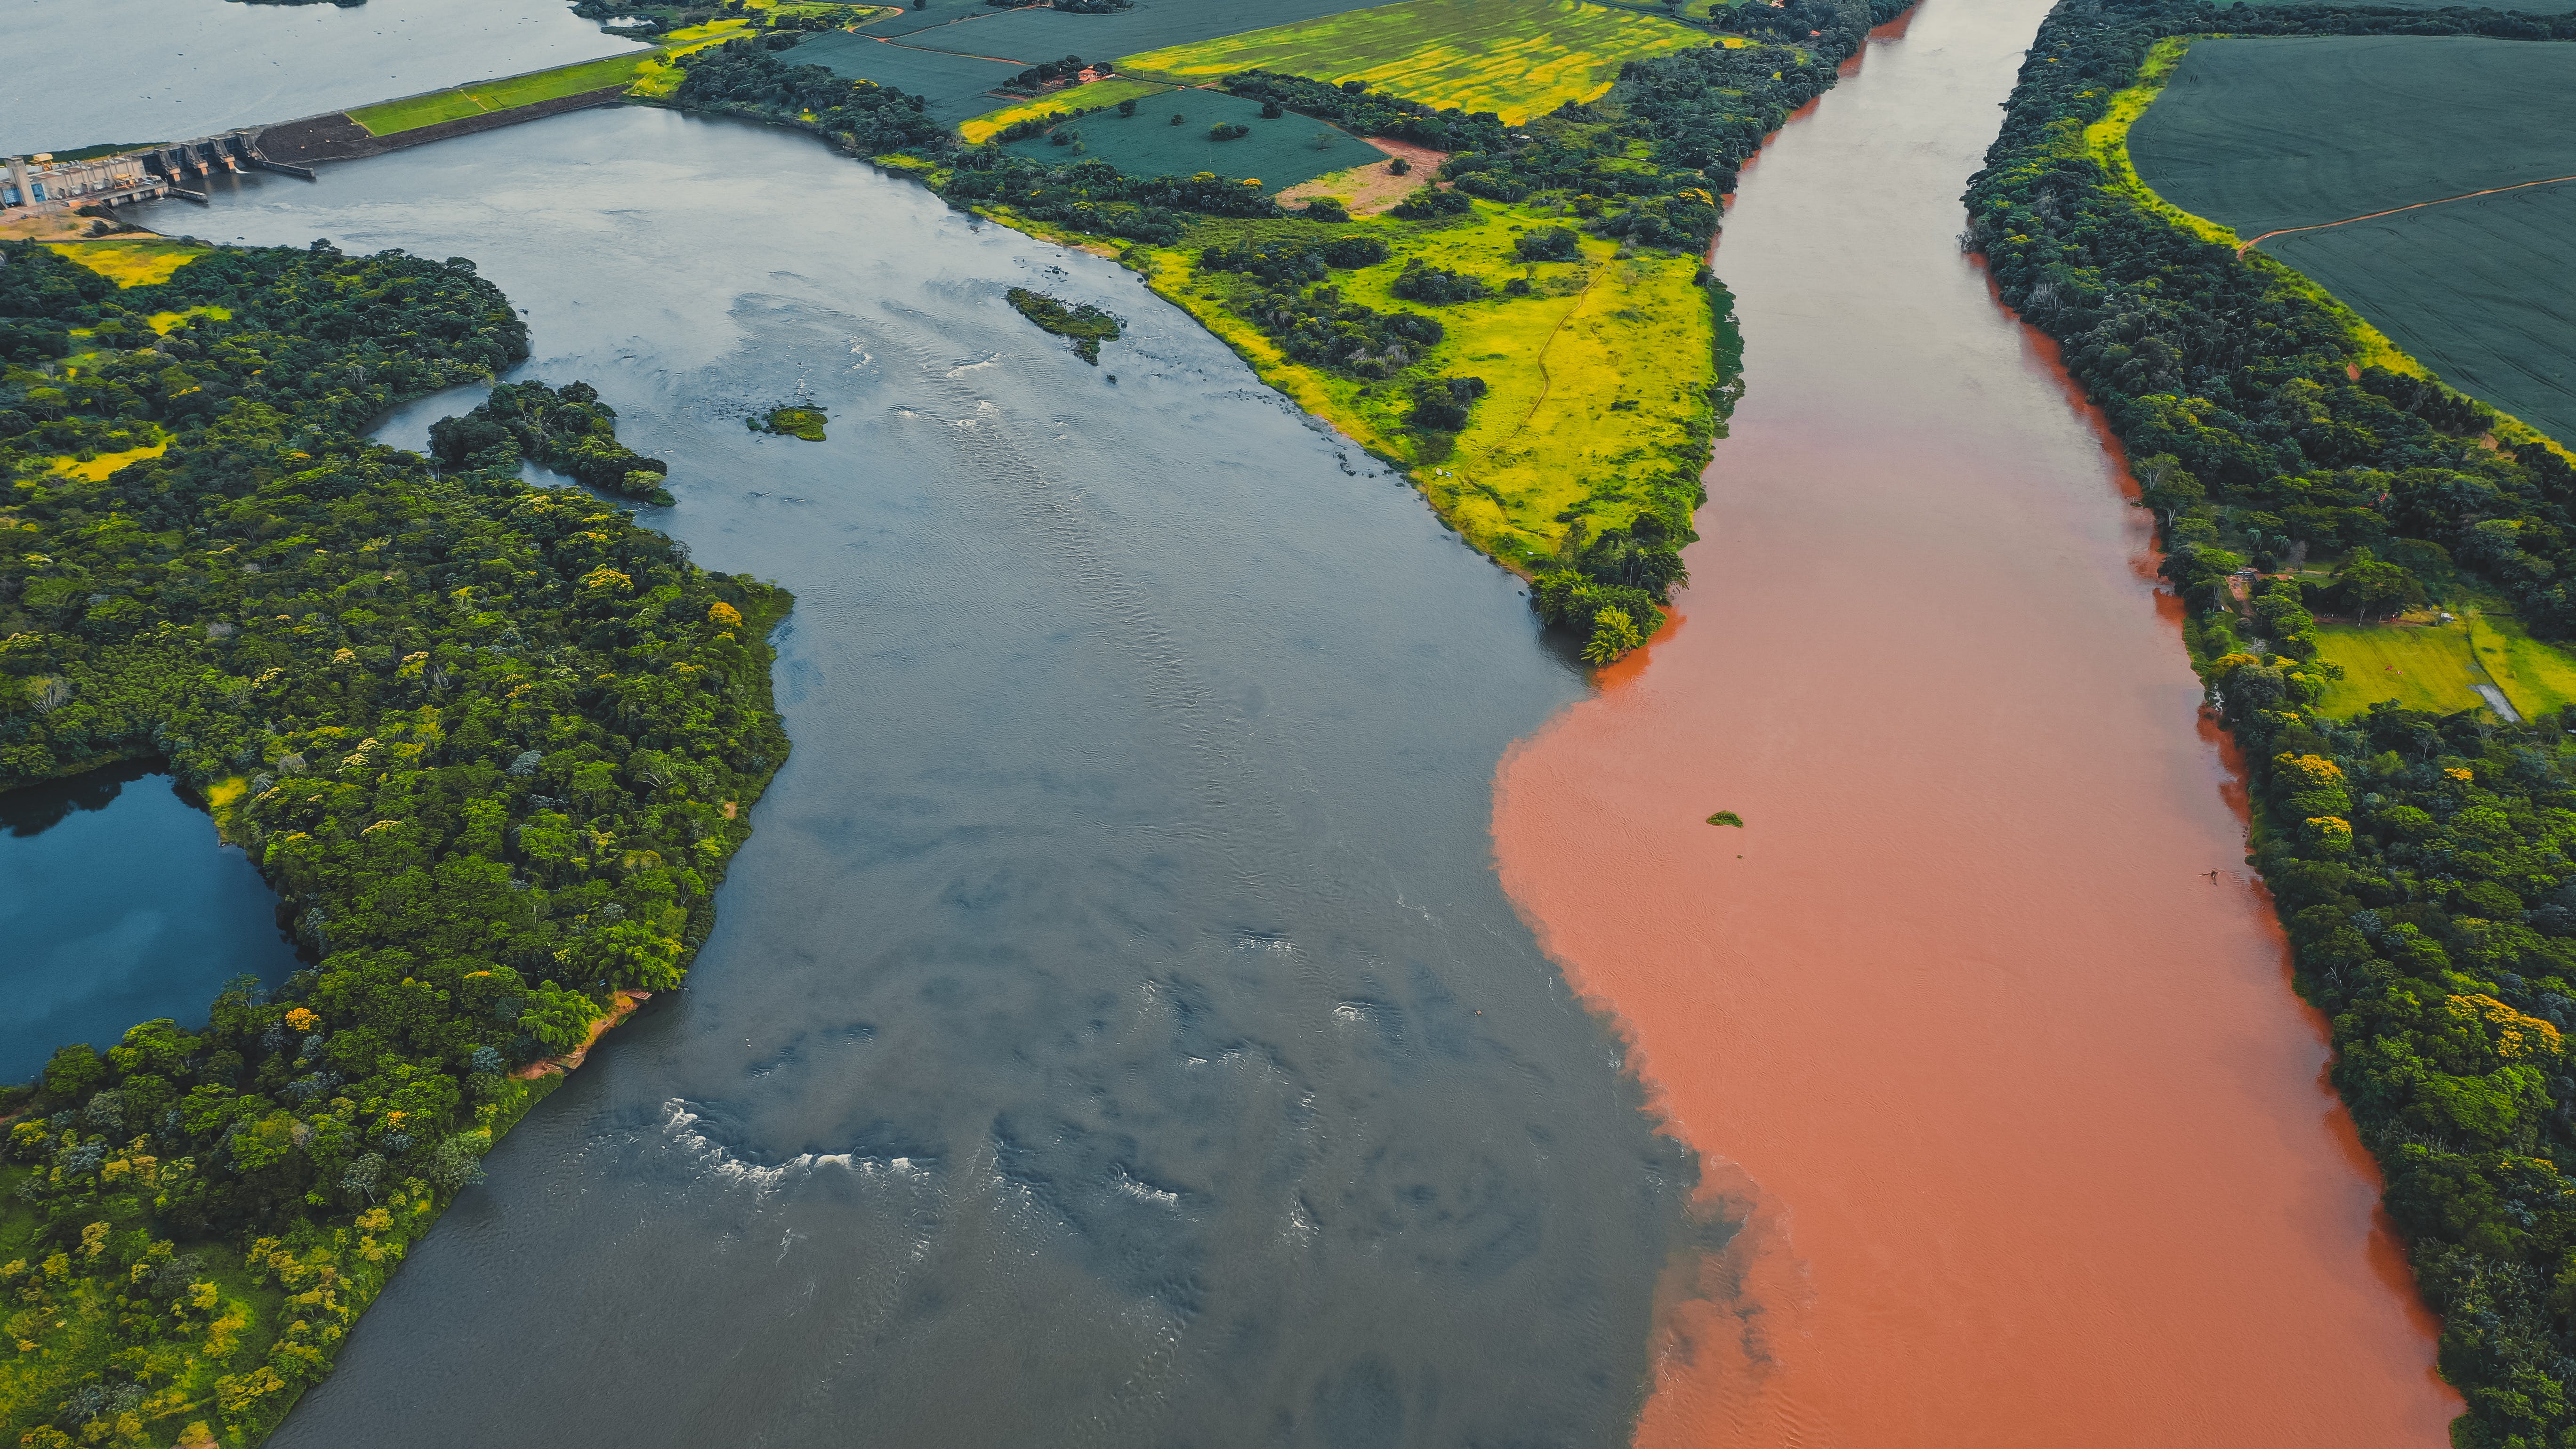 Амазонка полноводна круглый год. Река Амазонка в Бразилии. Река Рио Негро. Бразилия Амазонская низменность. Амазонка и Рио Негро.